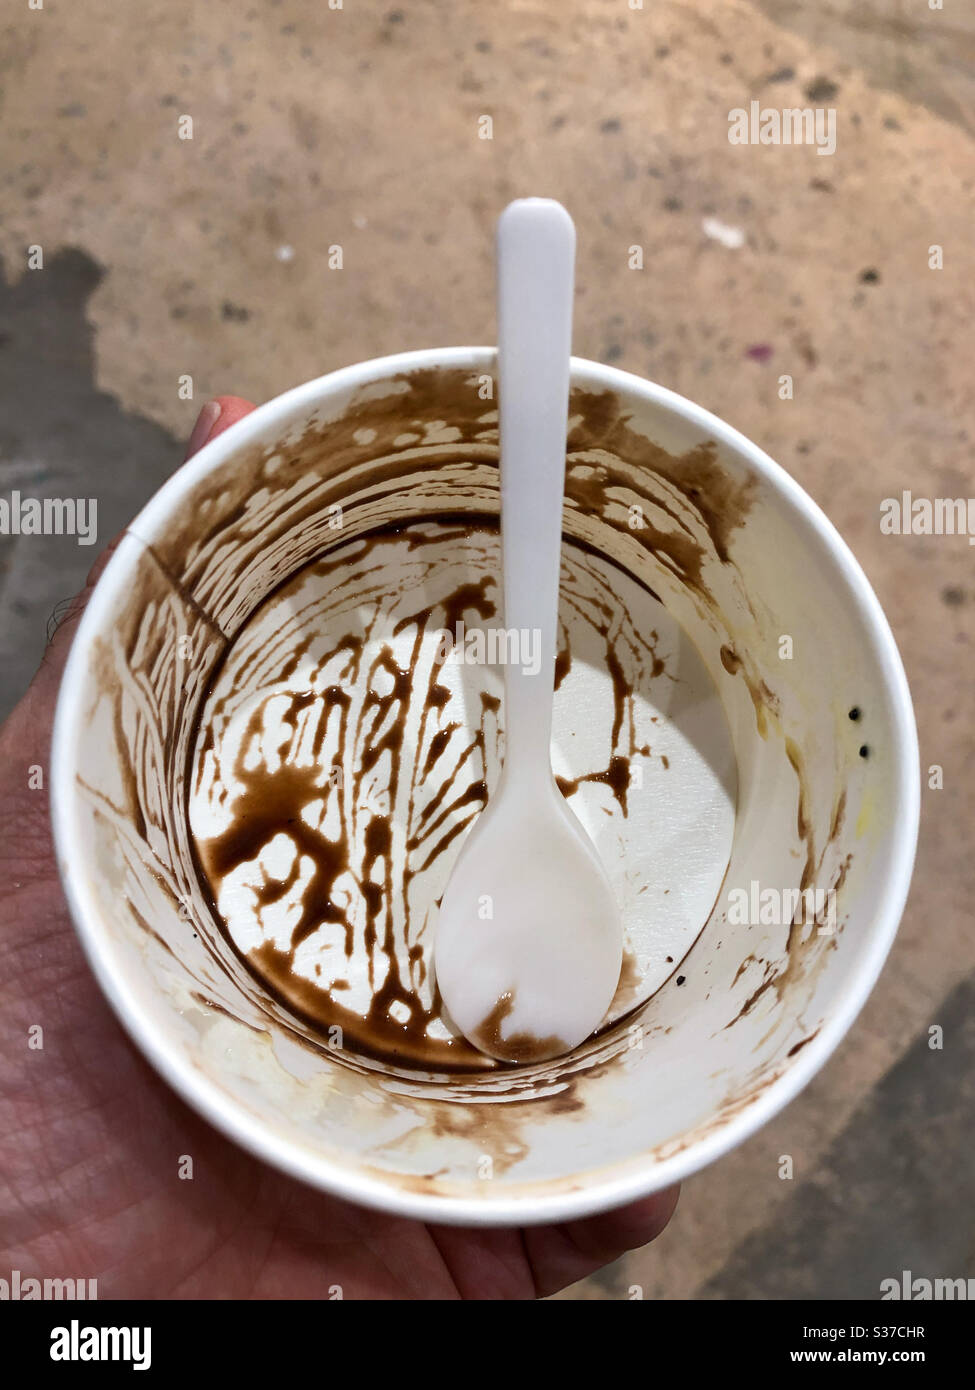 Una vasca vuota di gelato al cioccolato con un cucchiaio di plastica Foto Stock